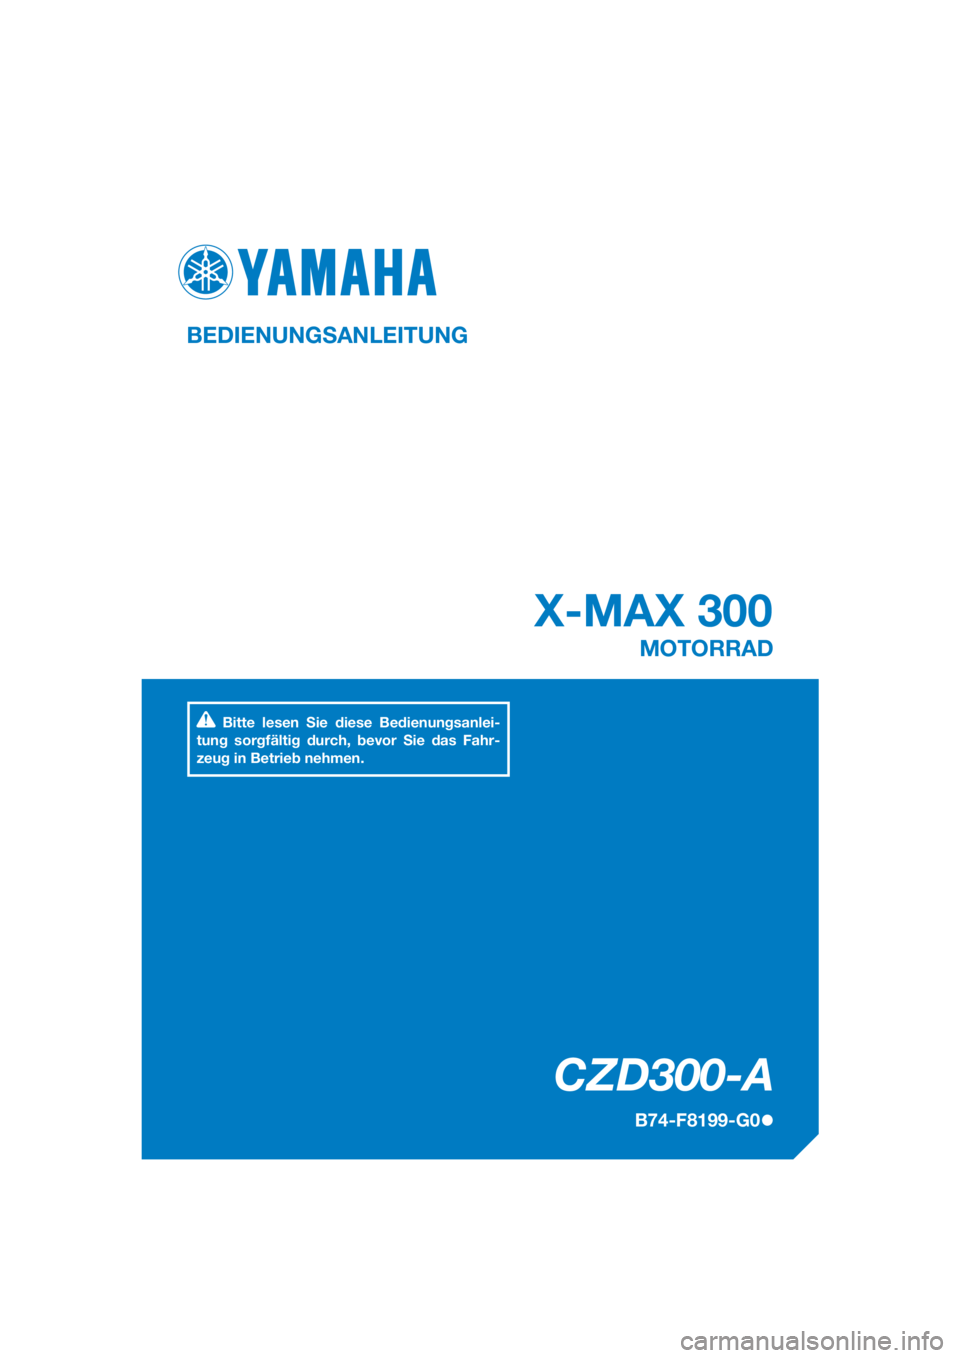 YAMAHA XMAX 300 2017  Betriebsanleitungen (in German) DIC183
CZD300-A
X-MAX 300
BEDIENUNGSANLEITUNG
B74-F8199-G0
MOTORRAD
Bitte lesen Sie diese Bedienungsanlei-
tung sorgfältig durch, bevor Sie das Fahr-
zeug in Betrieb nehmen.
[German  (G)] 